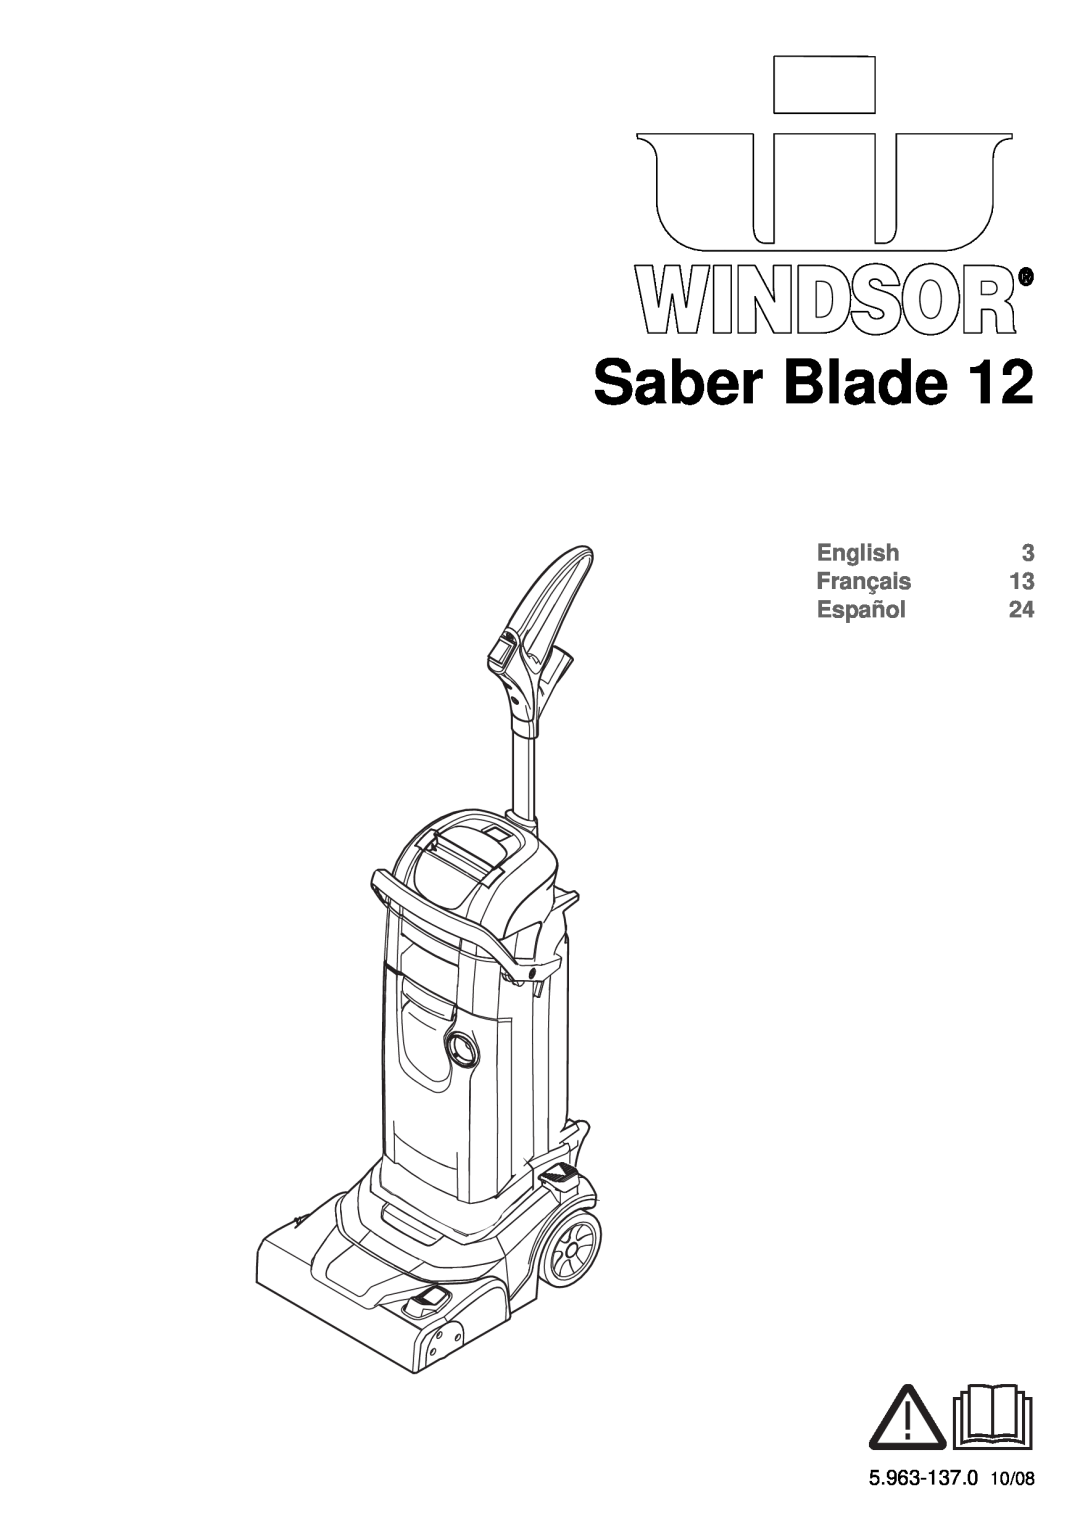 Windsor Saber Blade 12 manual English Français Español 